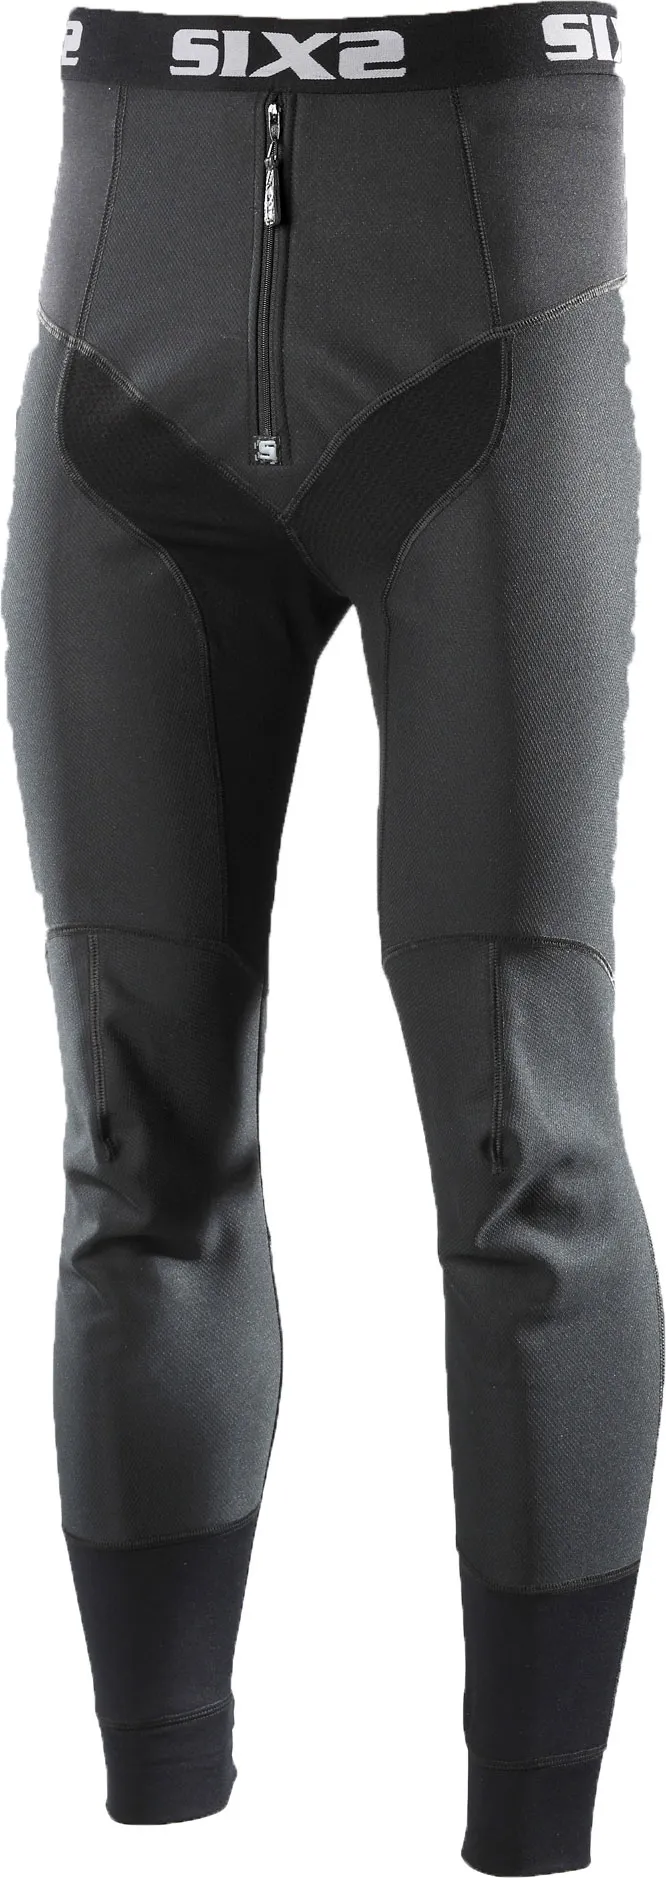 Sixs WTP, pantalon fonctionnel - Noir - XS